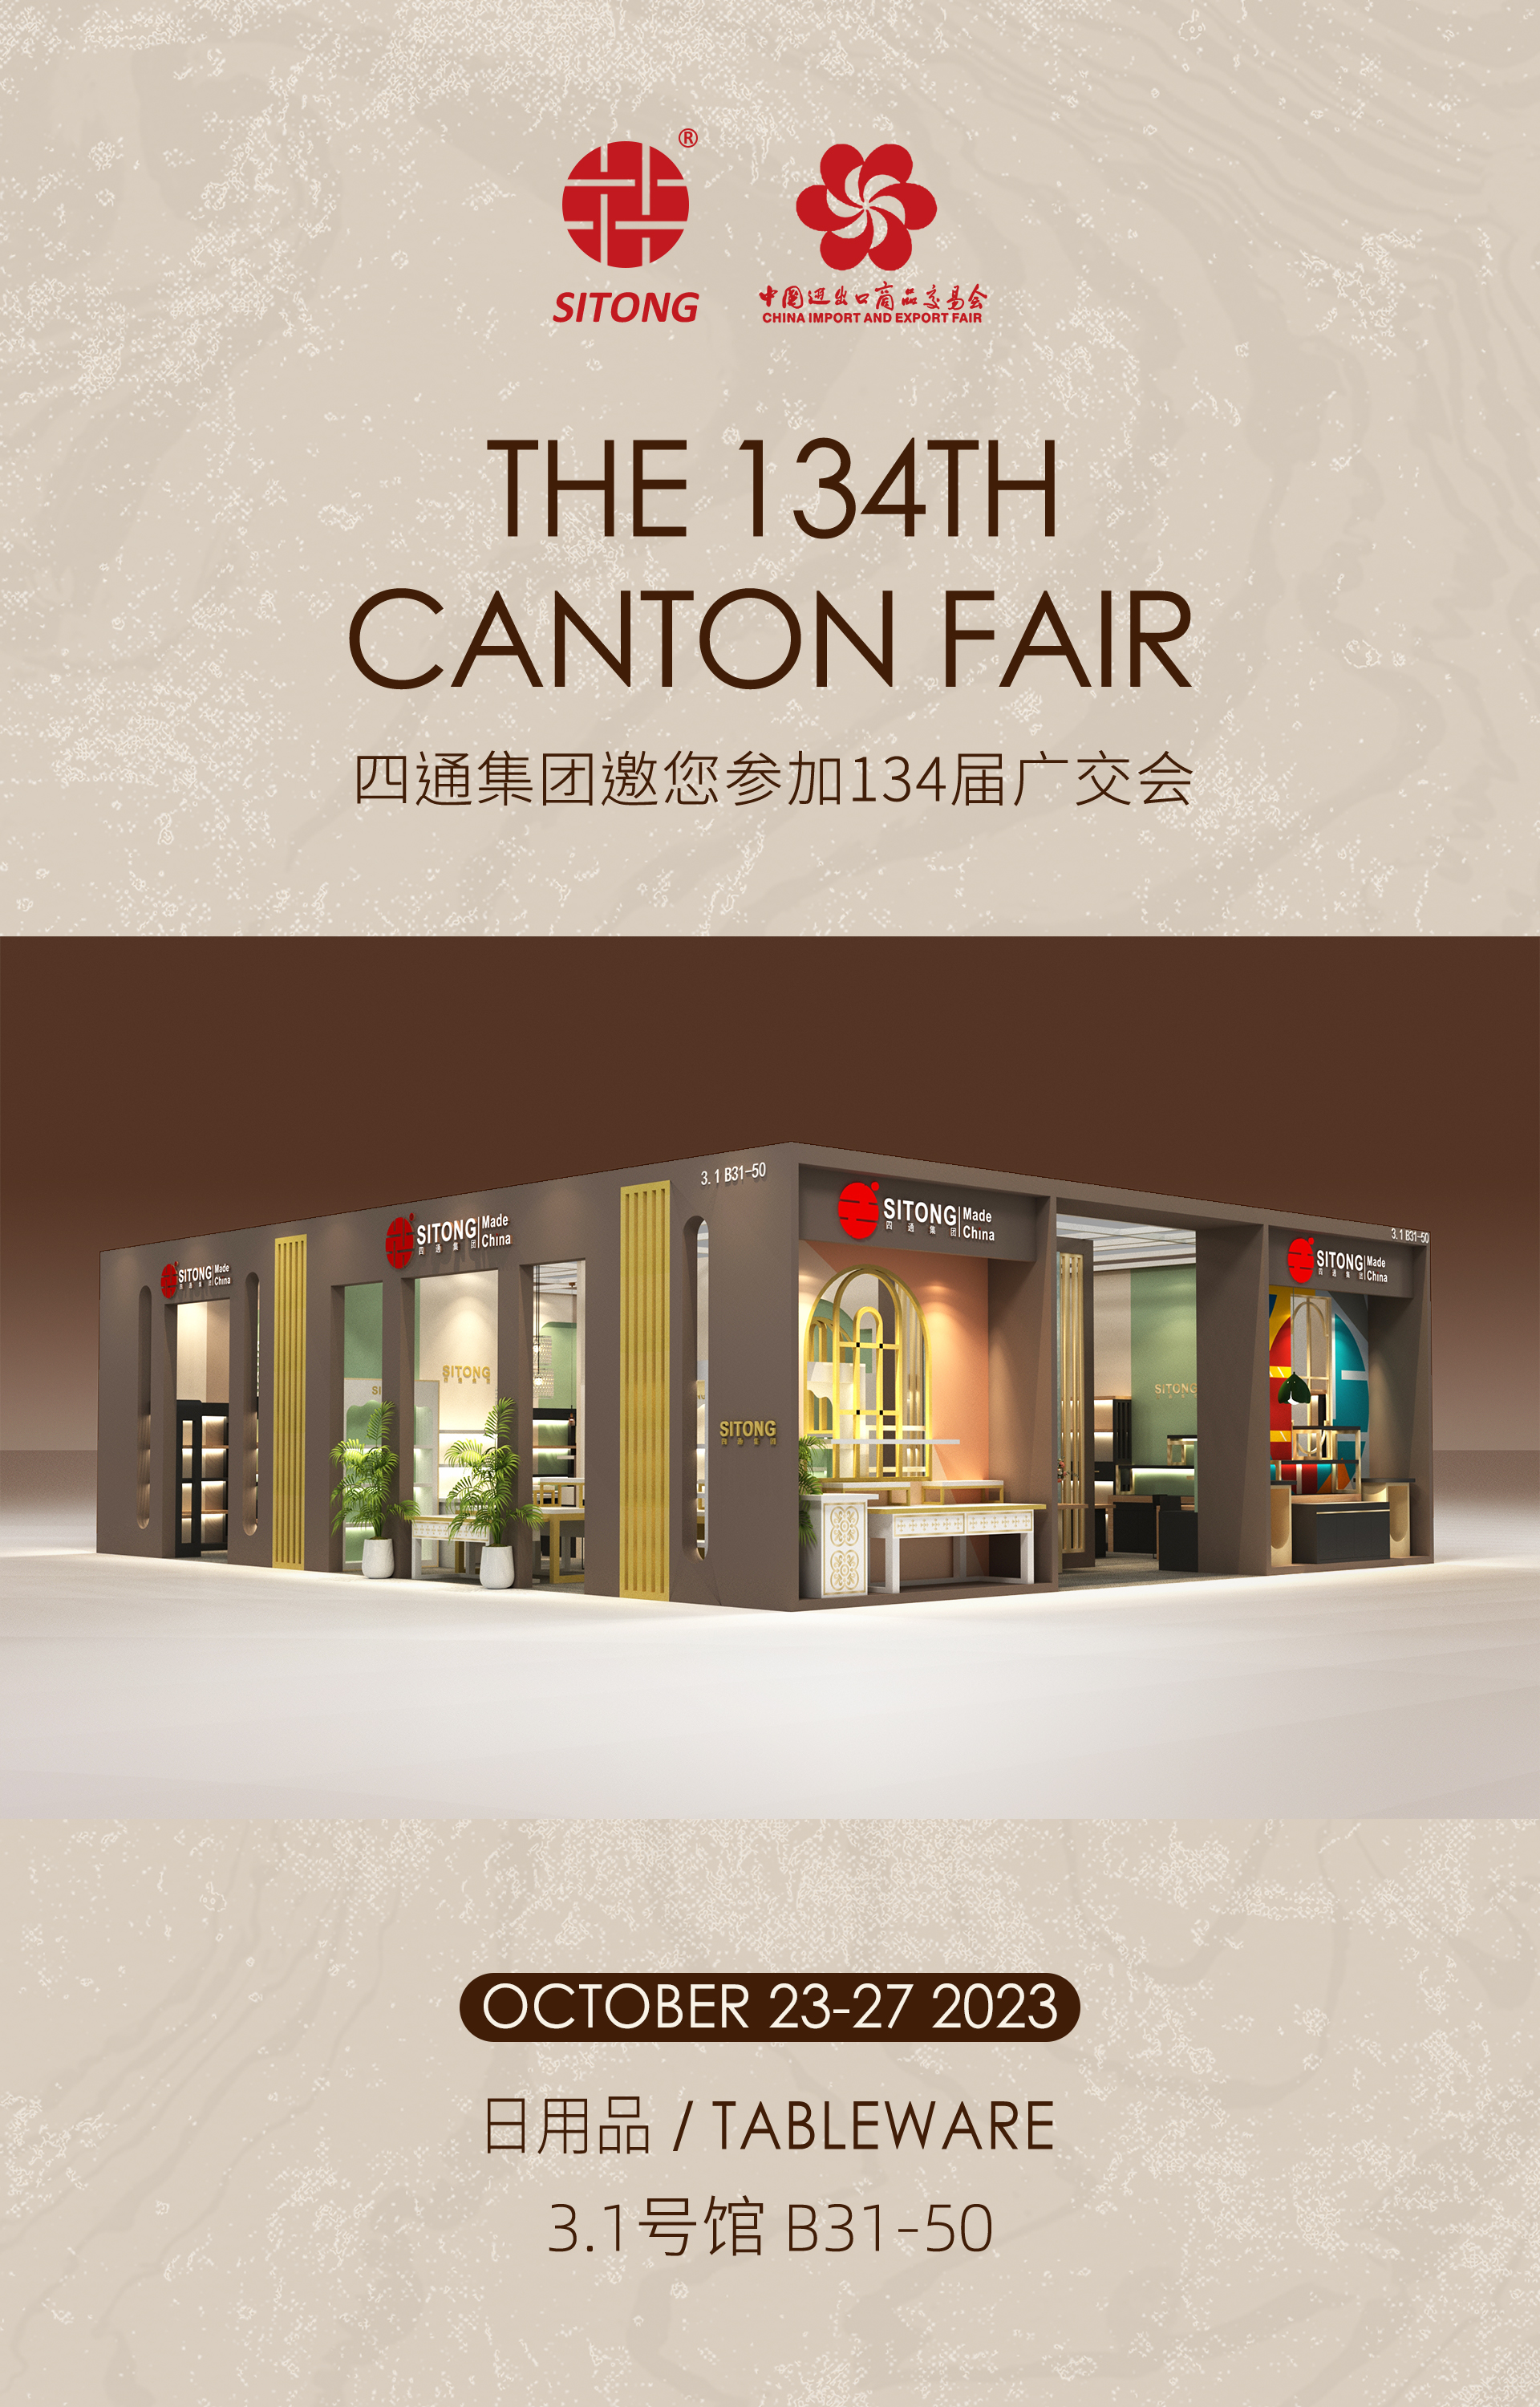 Dobrodošli da nas posjetite na 134. kantonalnom sajmu